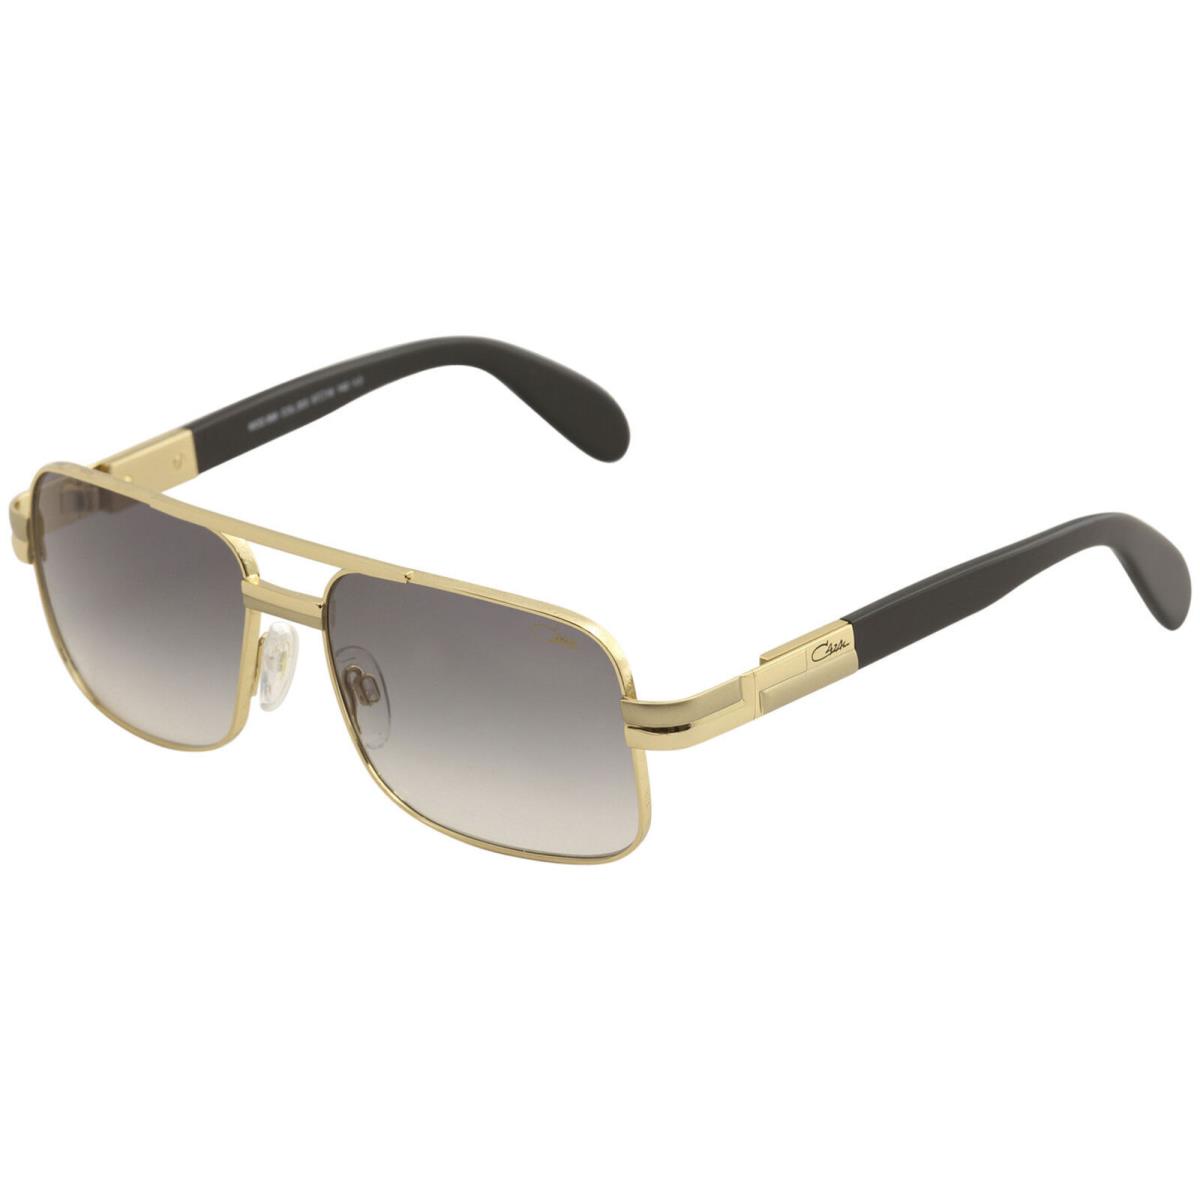 Cazal Sunglasses 988 003 Gold Designer Frames Gray Lens 57MM